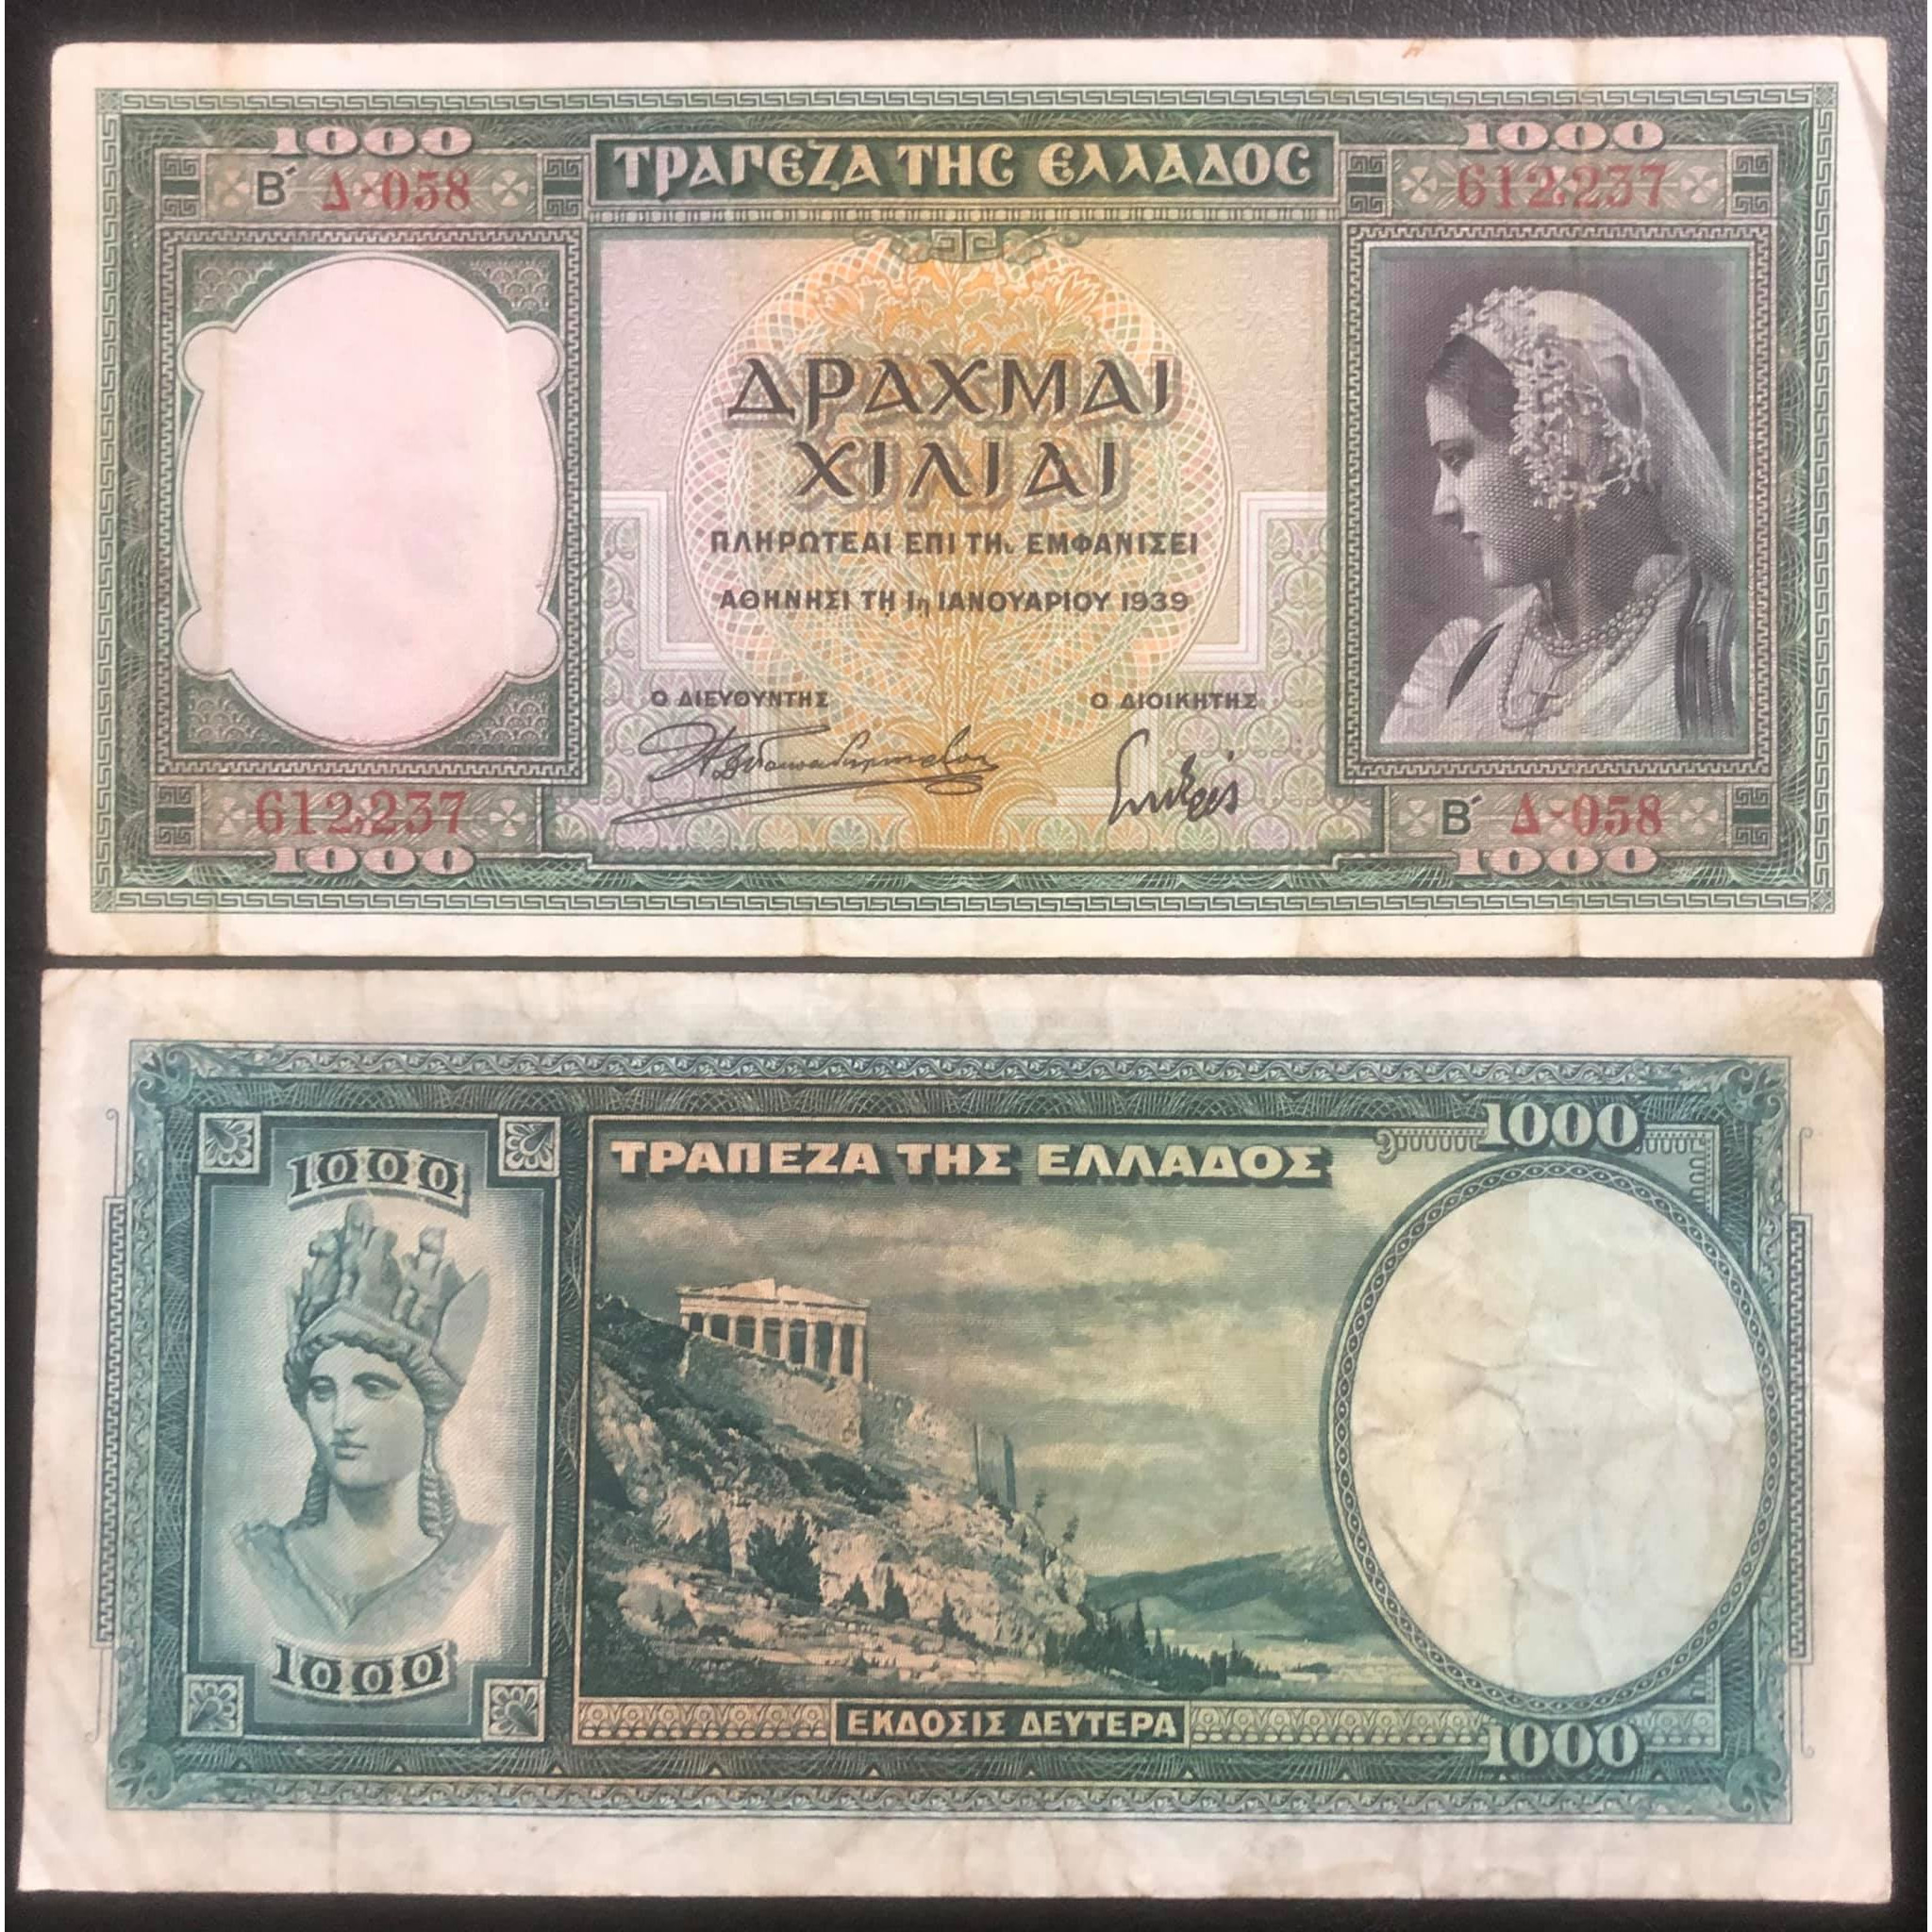 Tiền cổ Hy Lạp 1000 Drachma 1939 sưu tầm